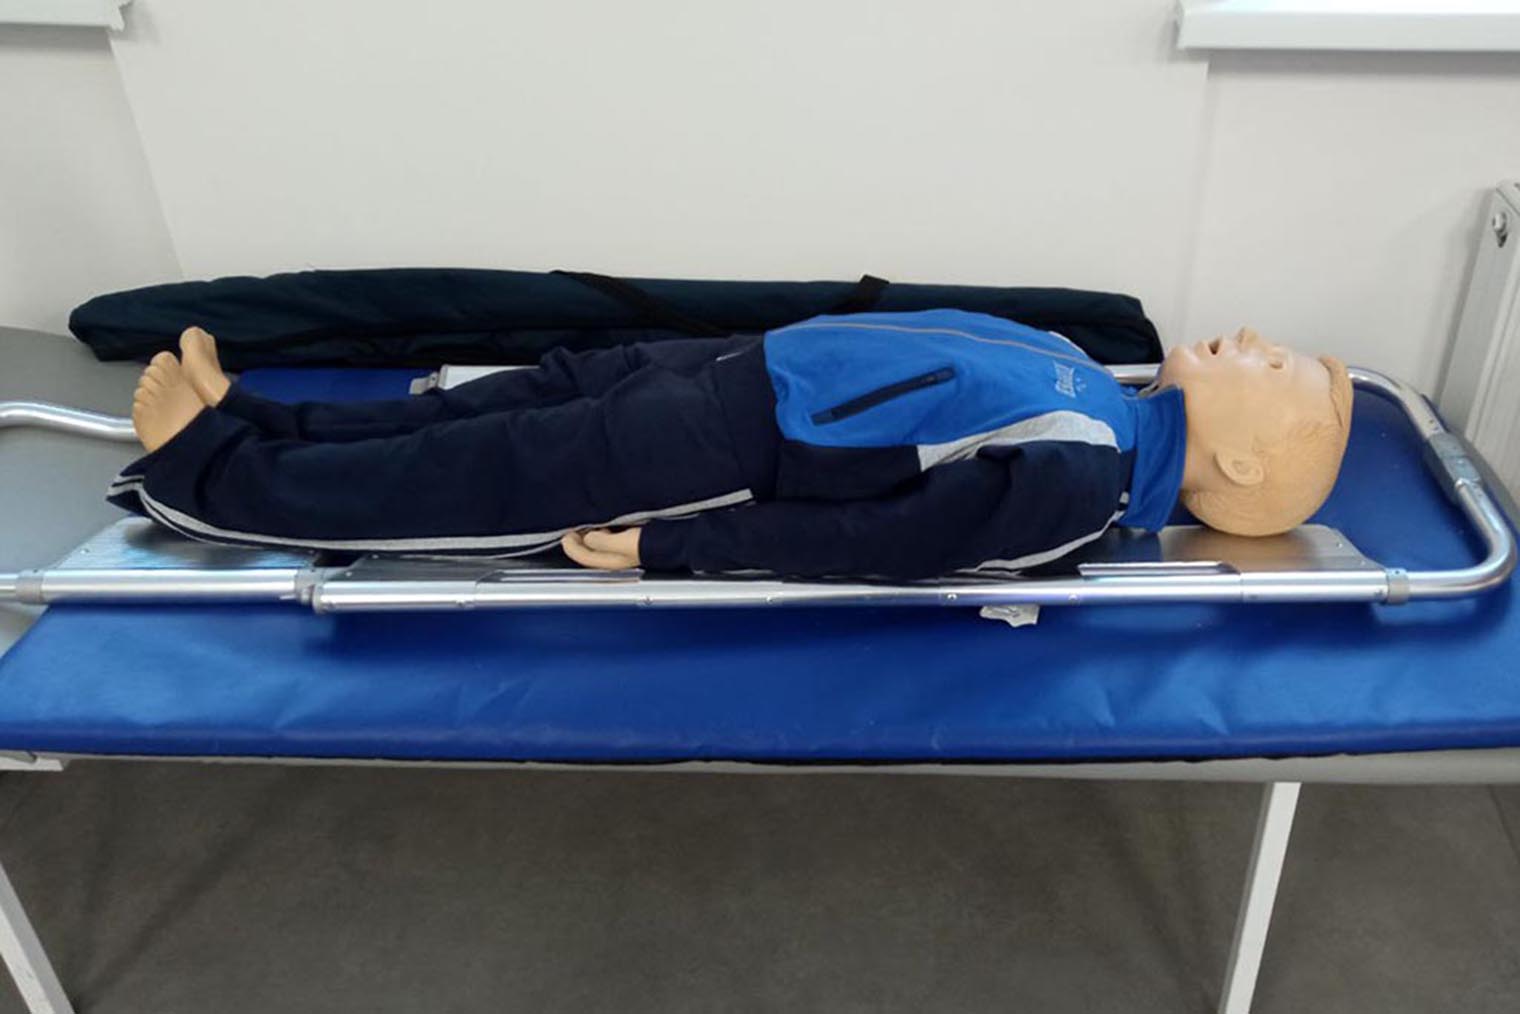 Как в медицинском колледже и вузе, в школе есть манекен для отработки навыков, например, искусственного дыхания. Источник: mskobr.ru